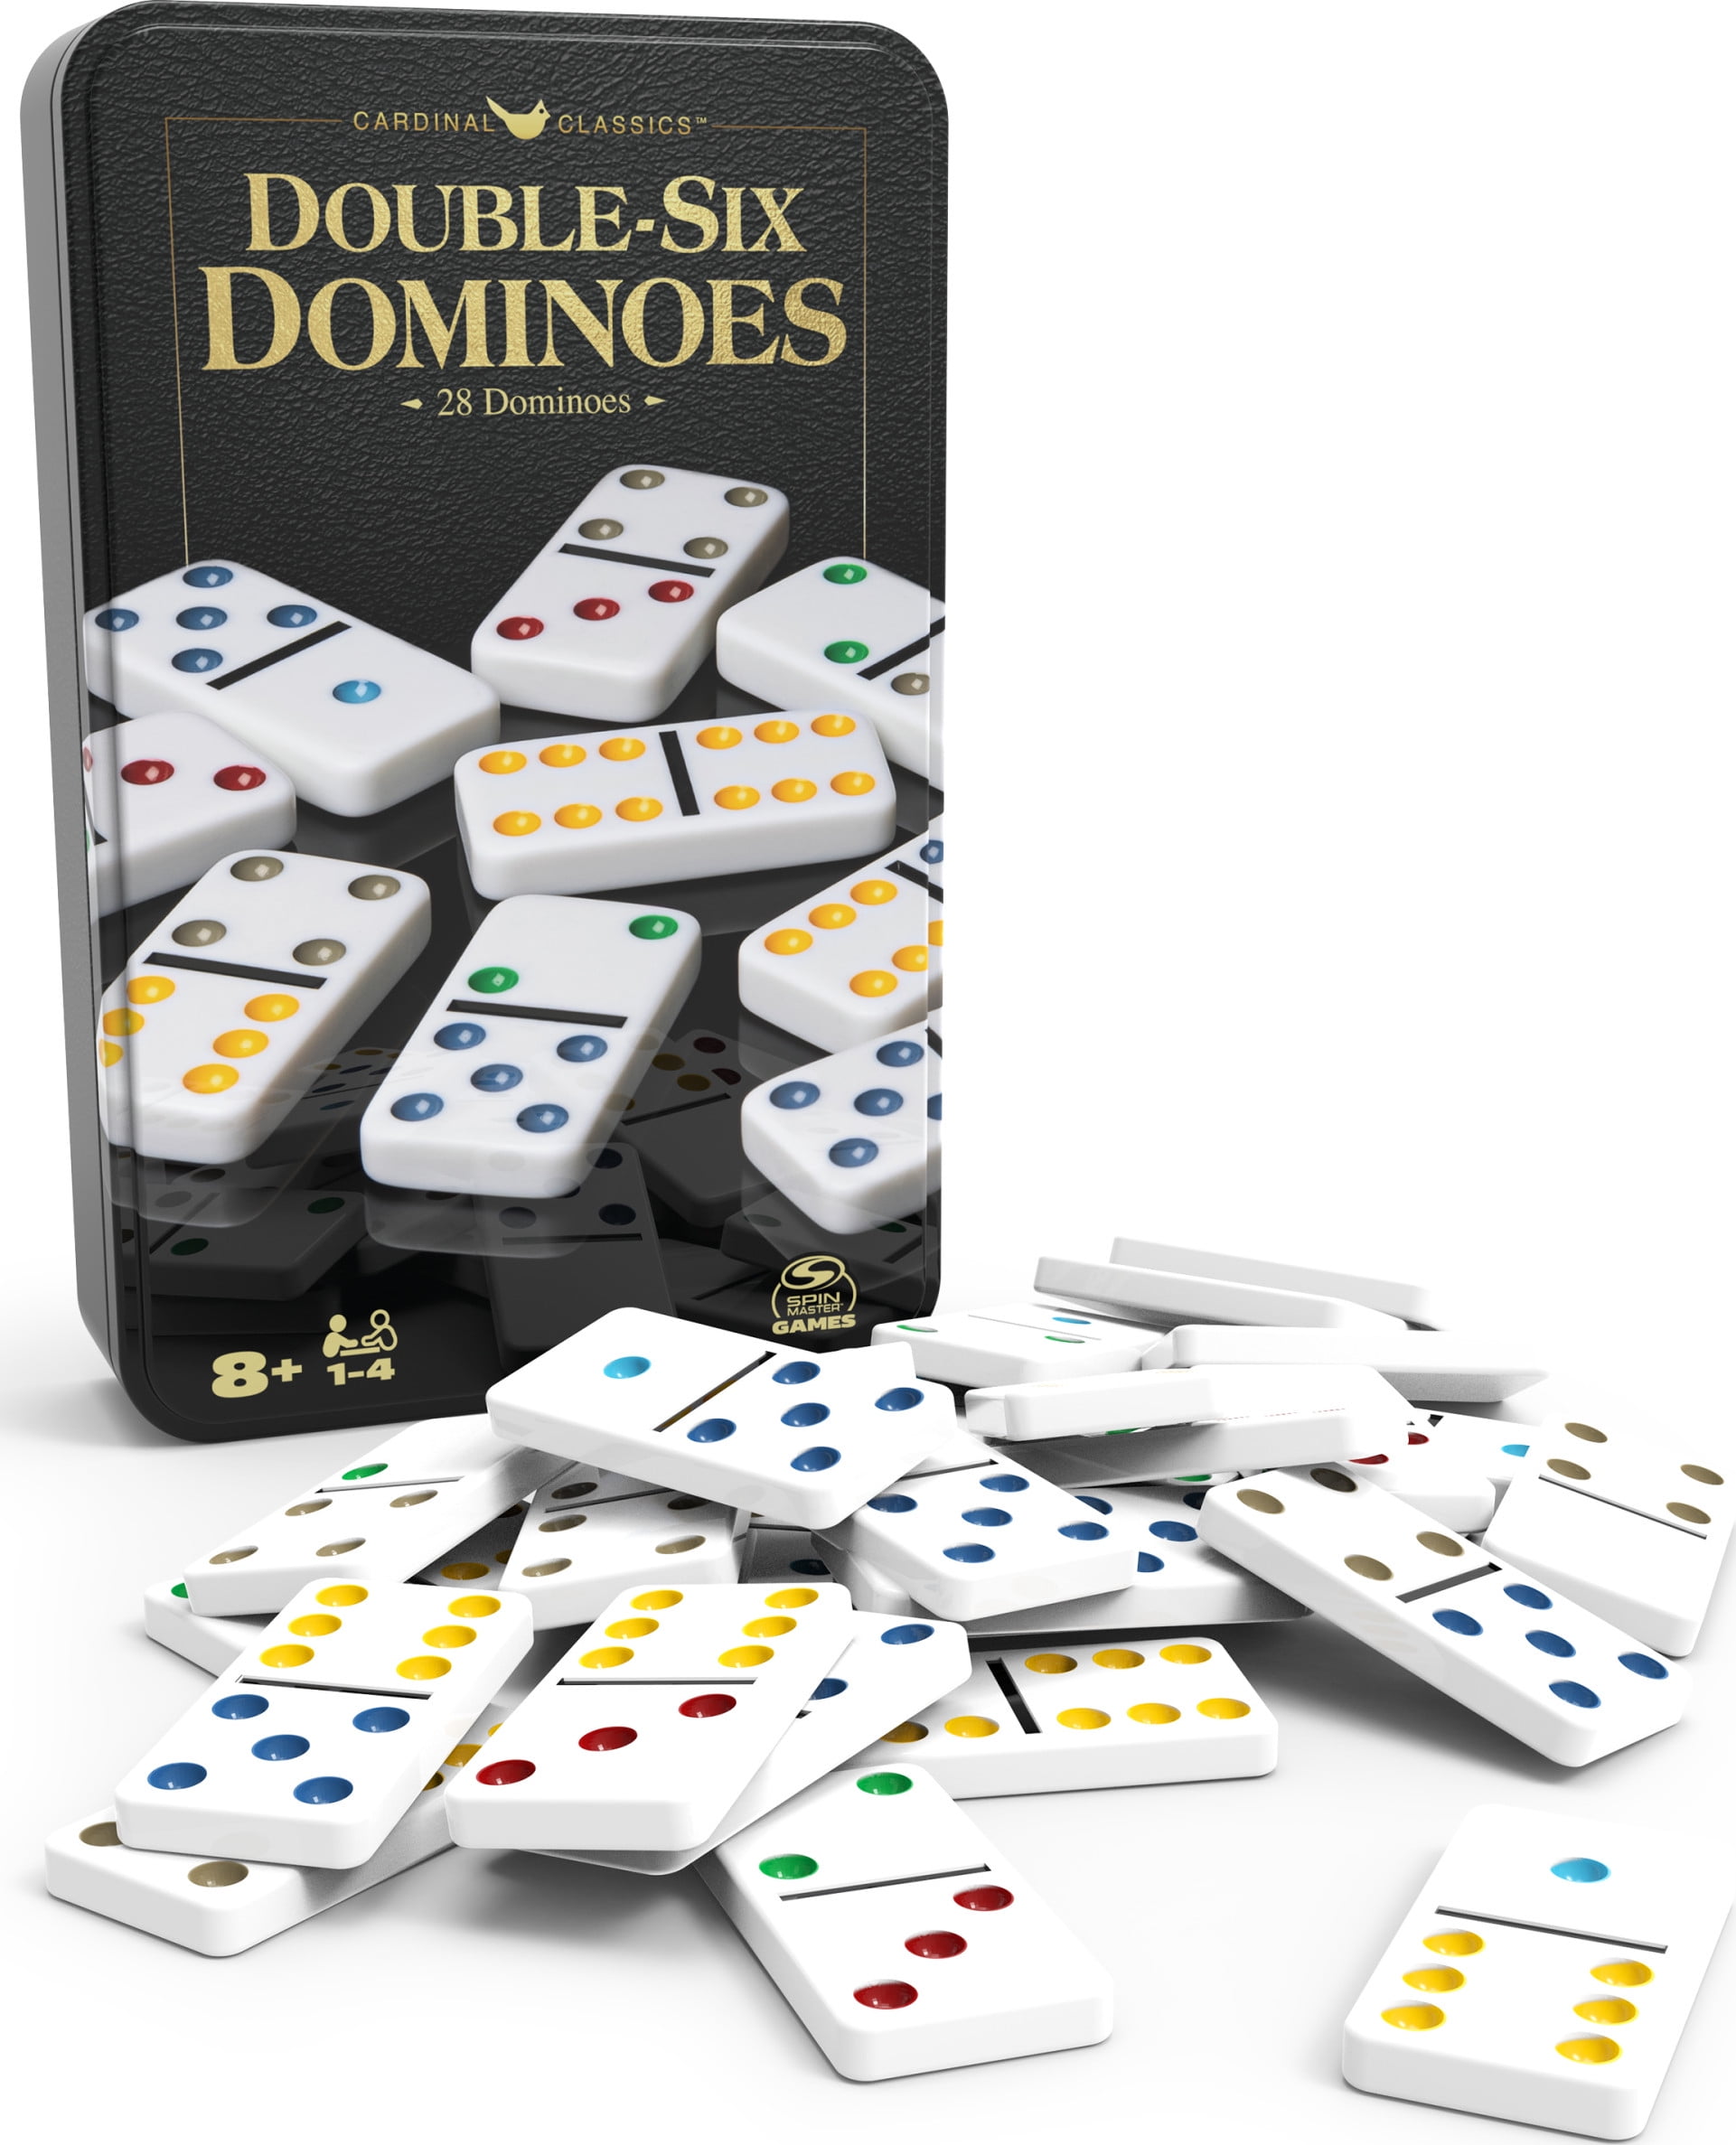 DM00010072 'Friendly Otter' Domino Set & Box 